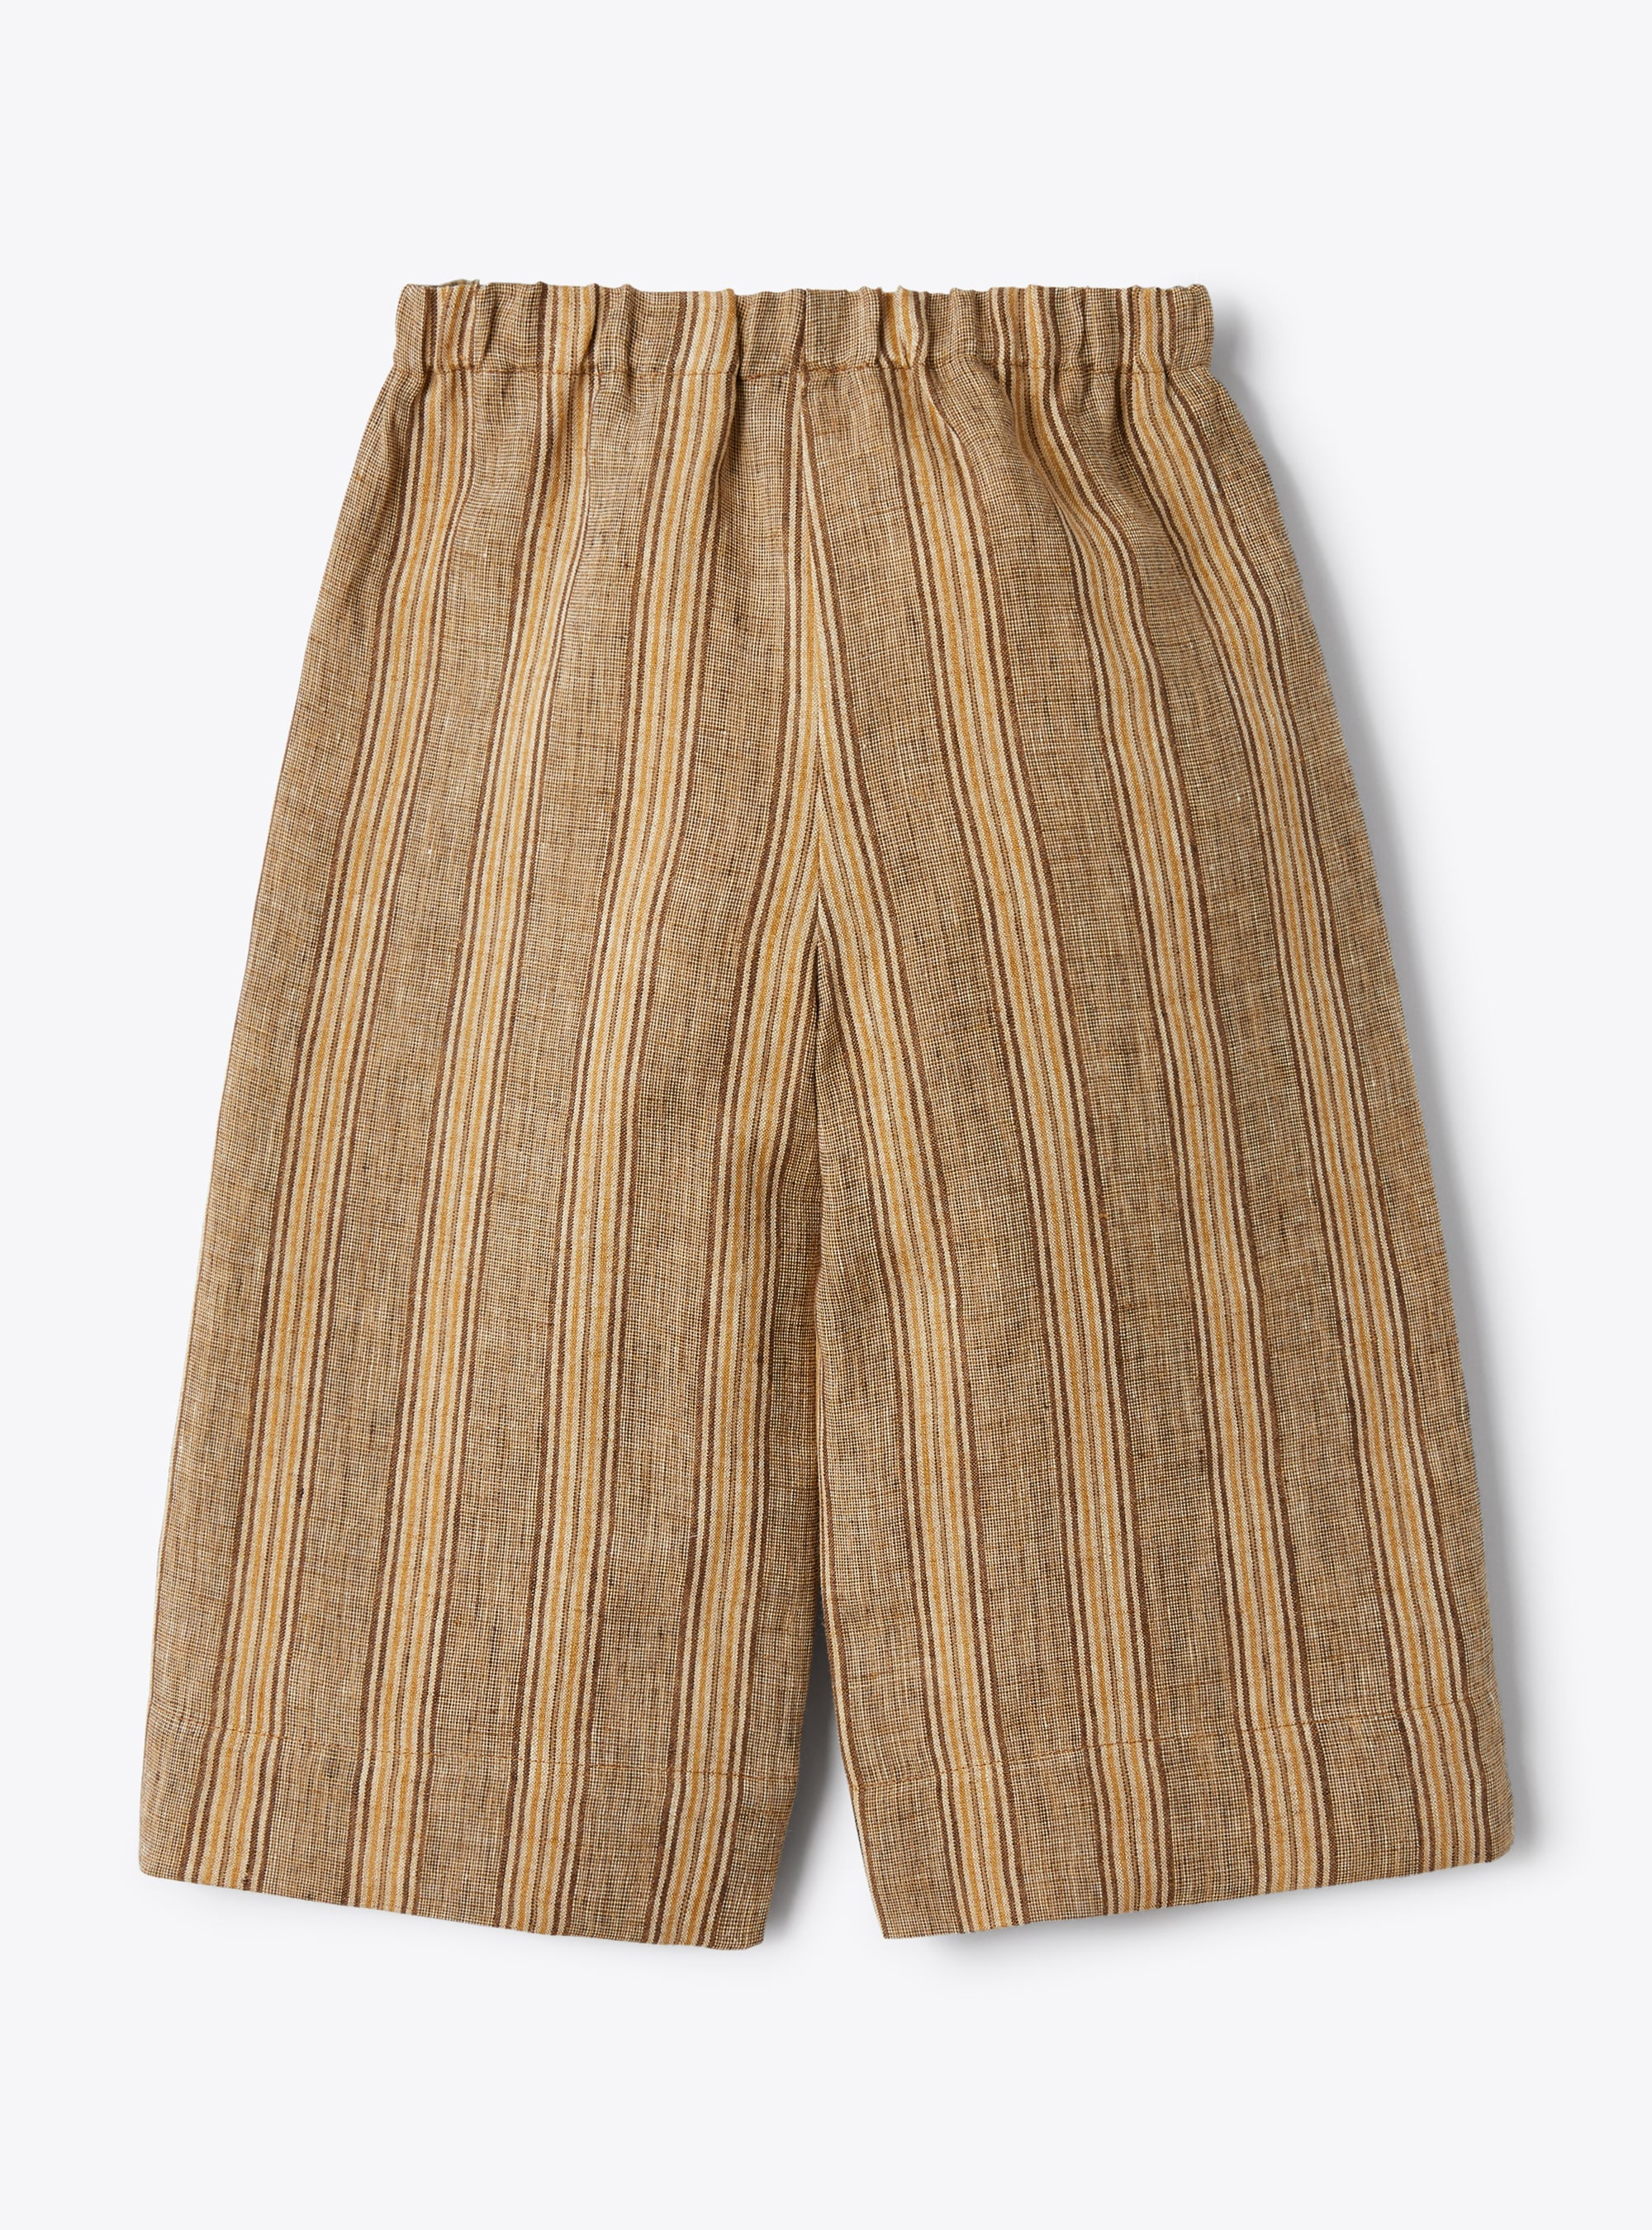 Льняные брюки капри с меланжевым эффектом в полоску орехового цвета - Коричневый | Il Gufo